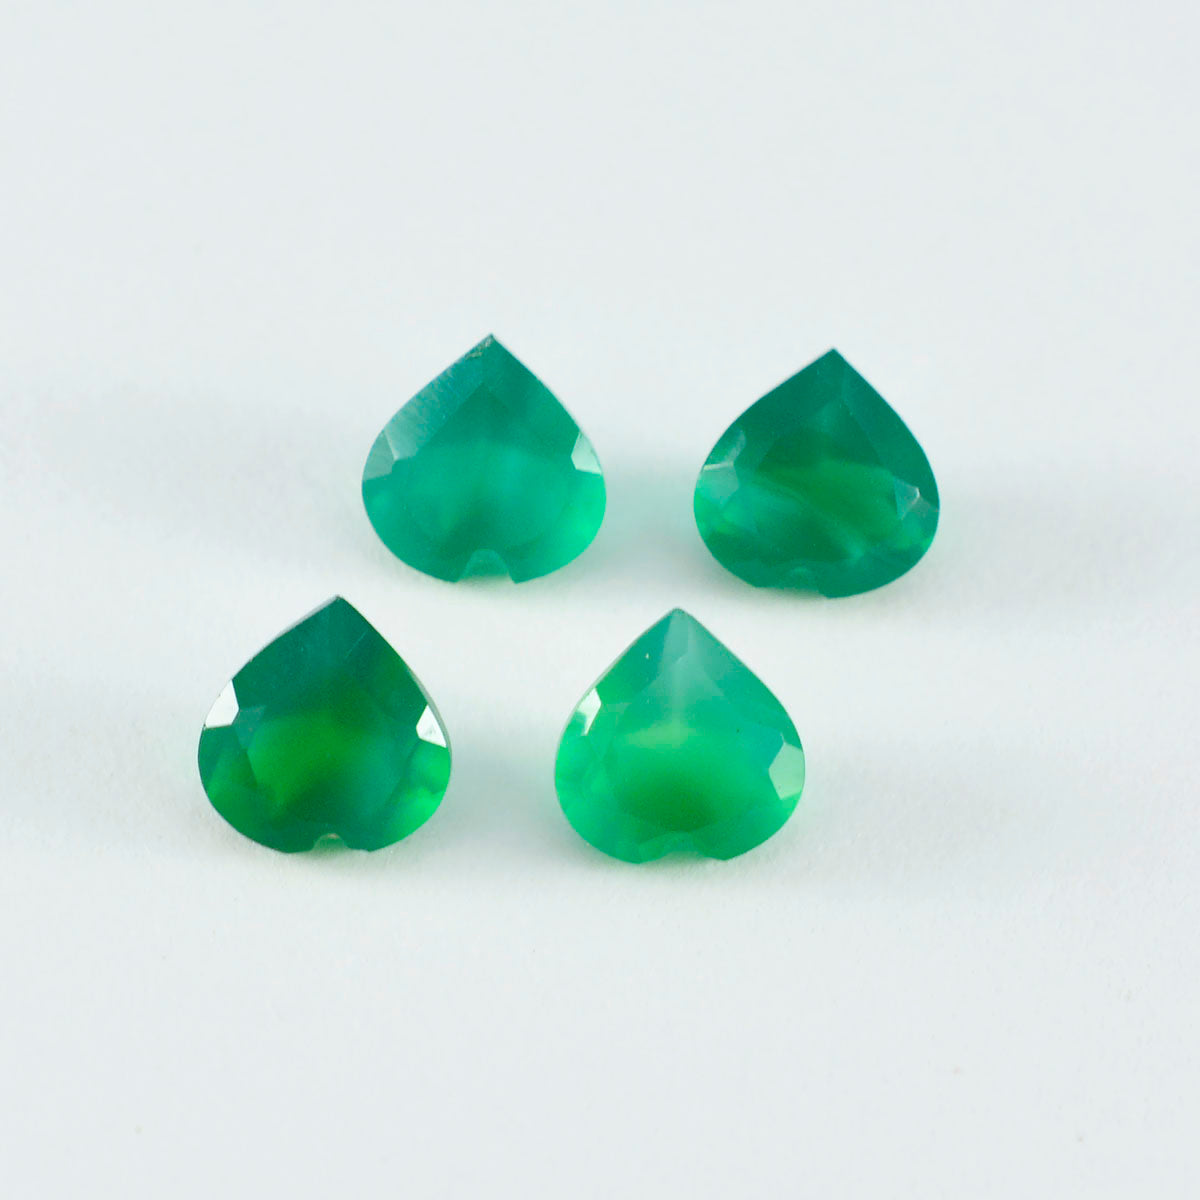 riyogems 1 pièce d'onyx vert naturel à facettes 6x6mm en forme de cœur, jolie pierre précieuse de qualité